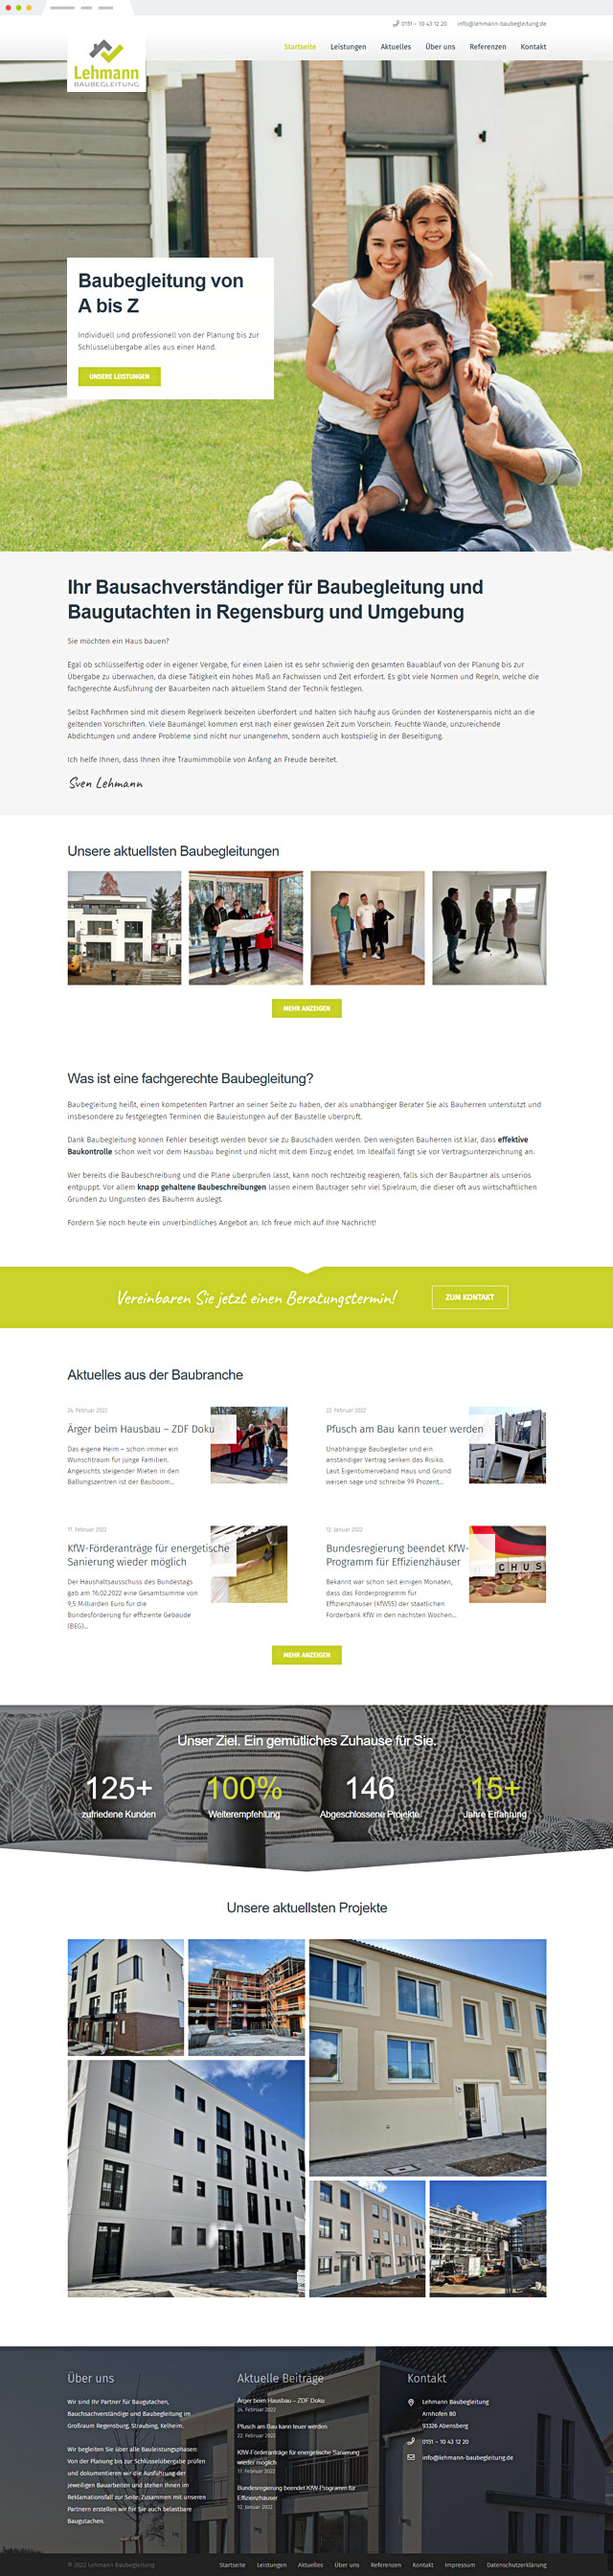 Lehmann Baubegleitung Webdesign Startseite